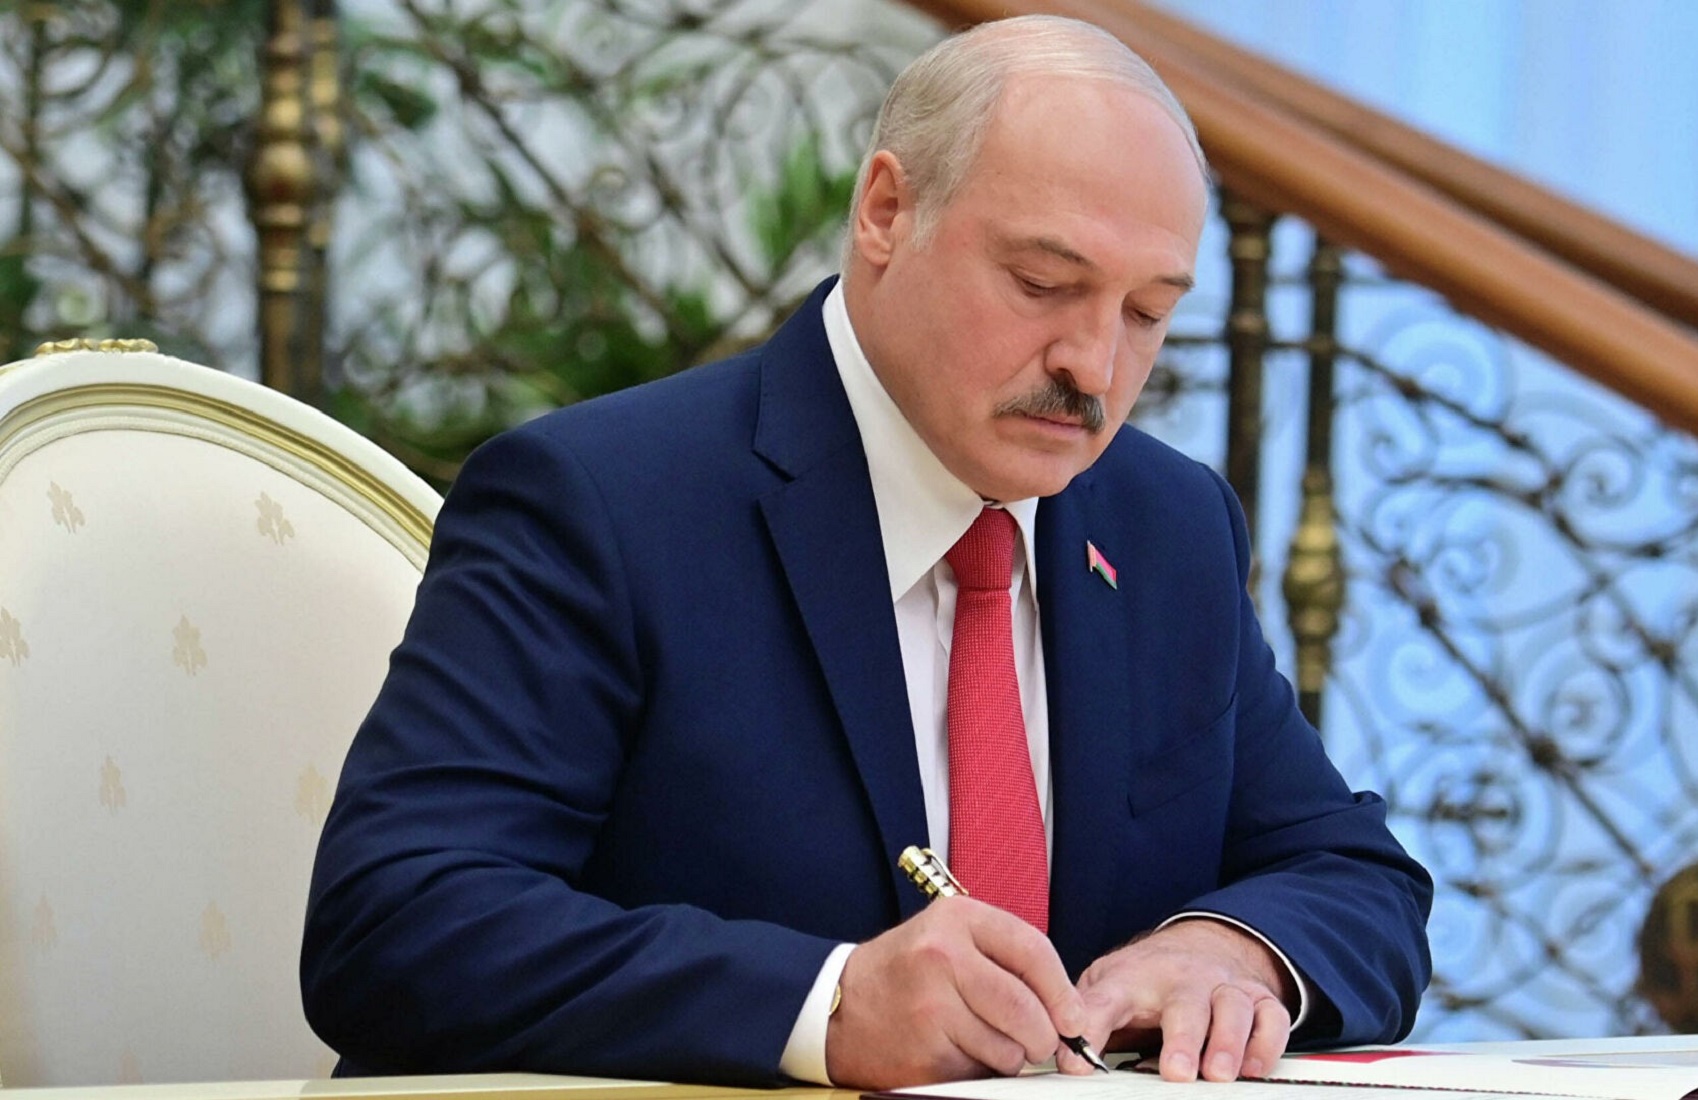 Лукашенко заявил, что Запад хочет свергнуть его с помощью России